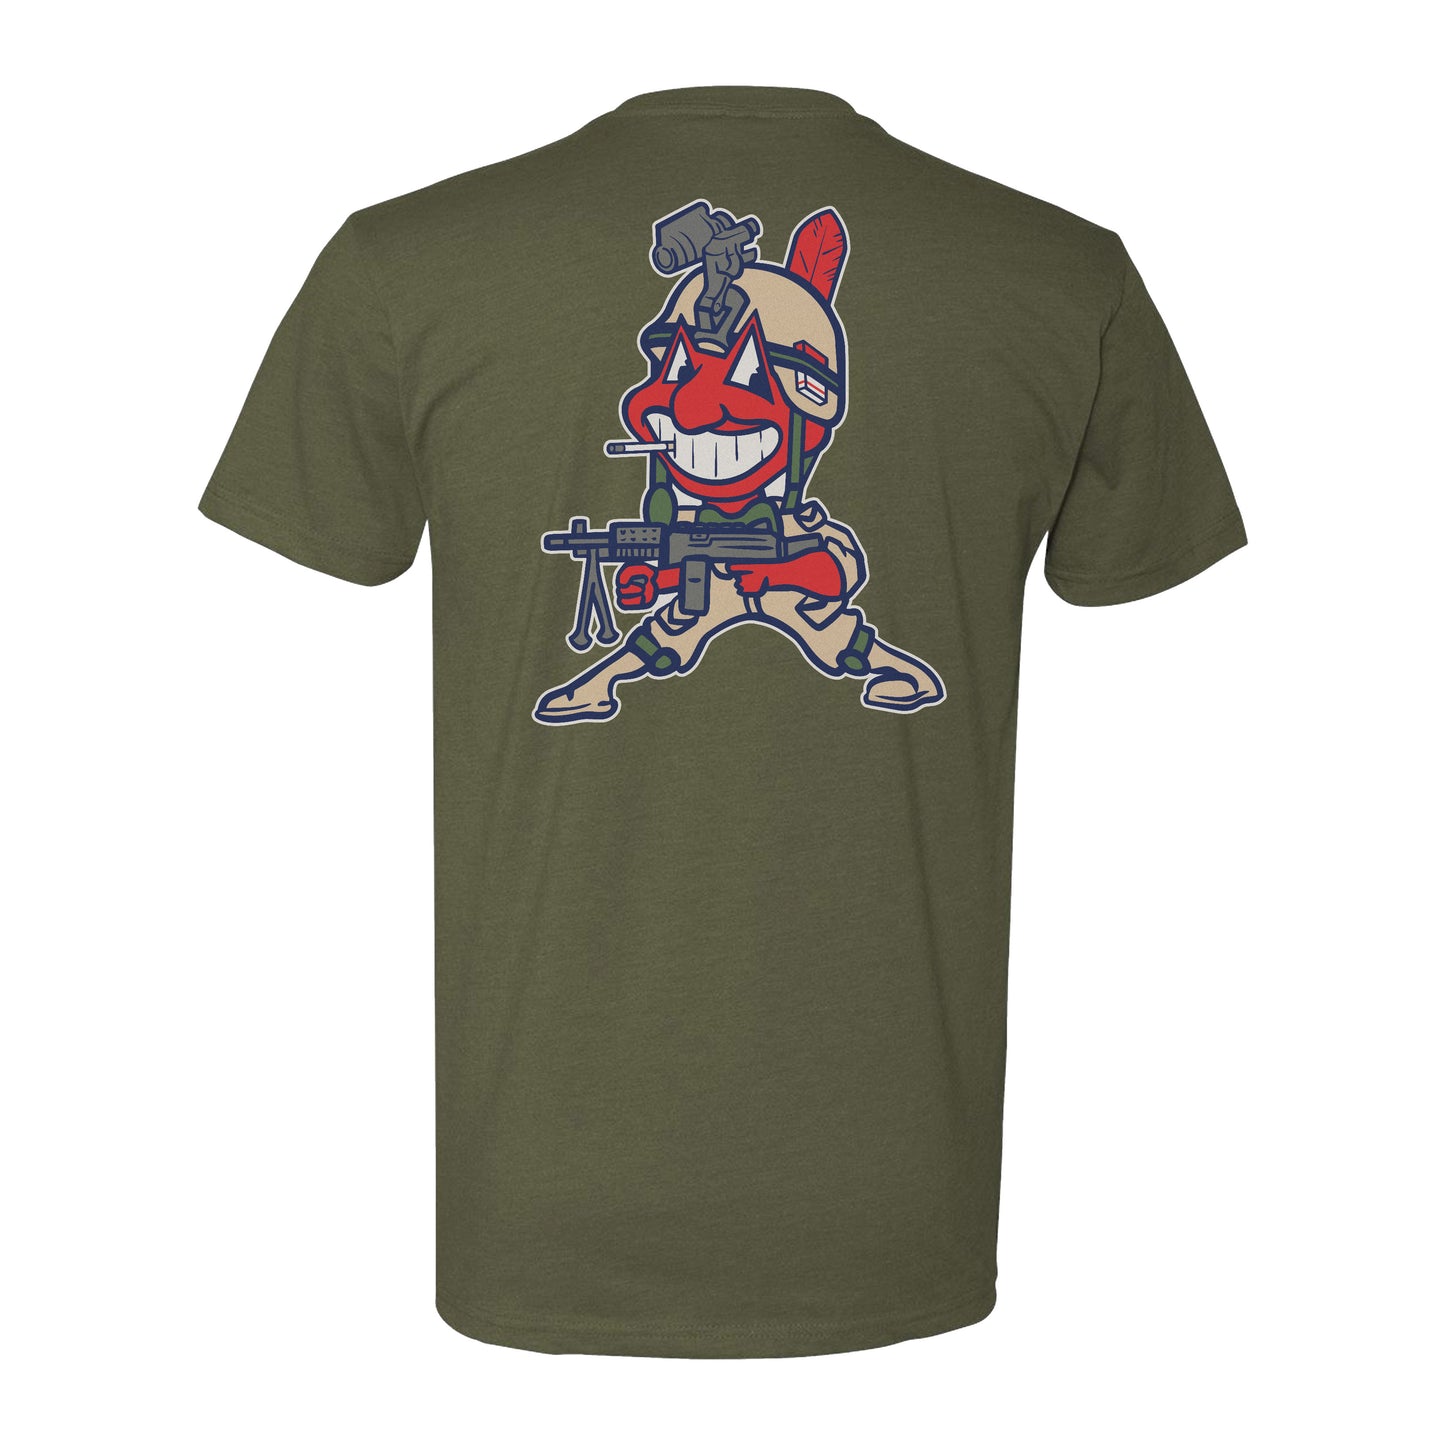 Cleveland Indians MLB Dog Tee Shirt